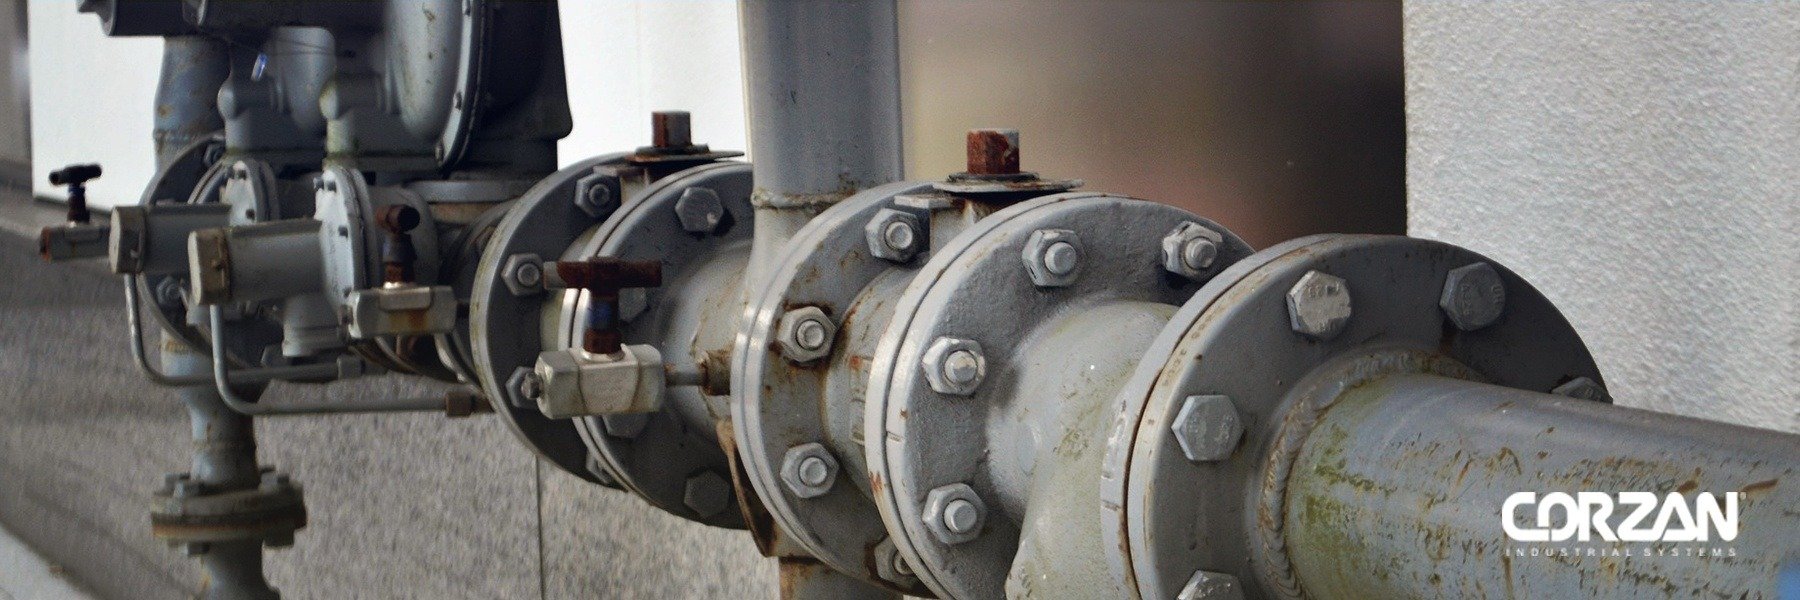 Conceptos básicos de válvulas para sistemas industriales de tuberías